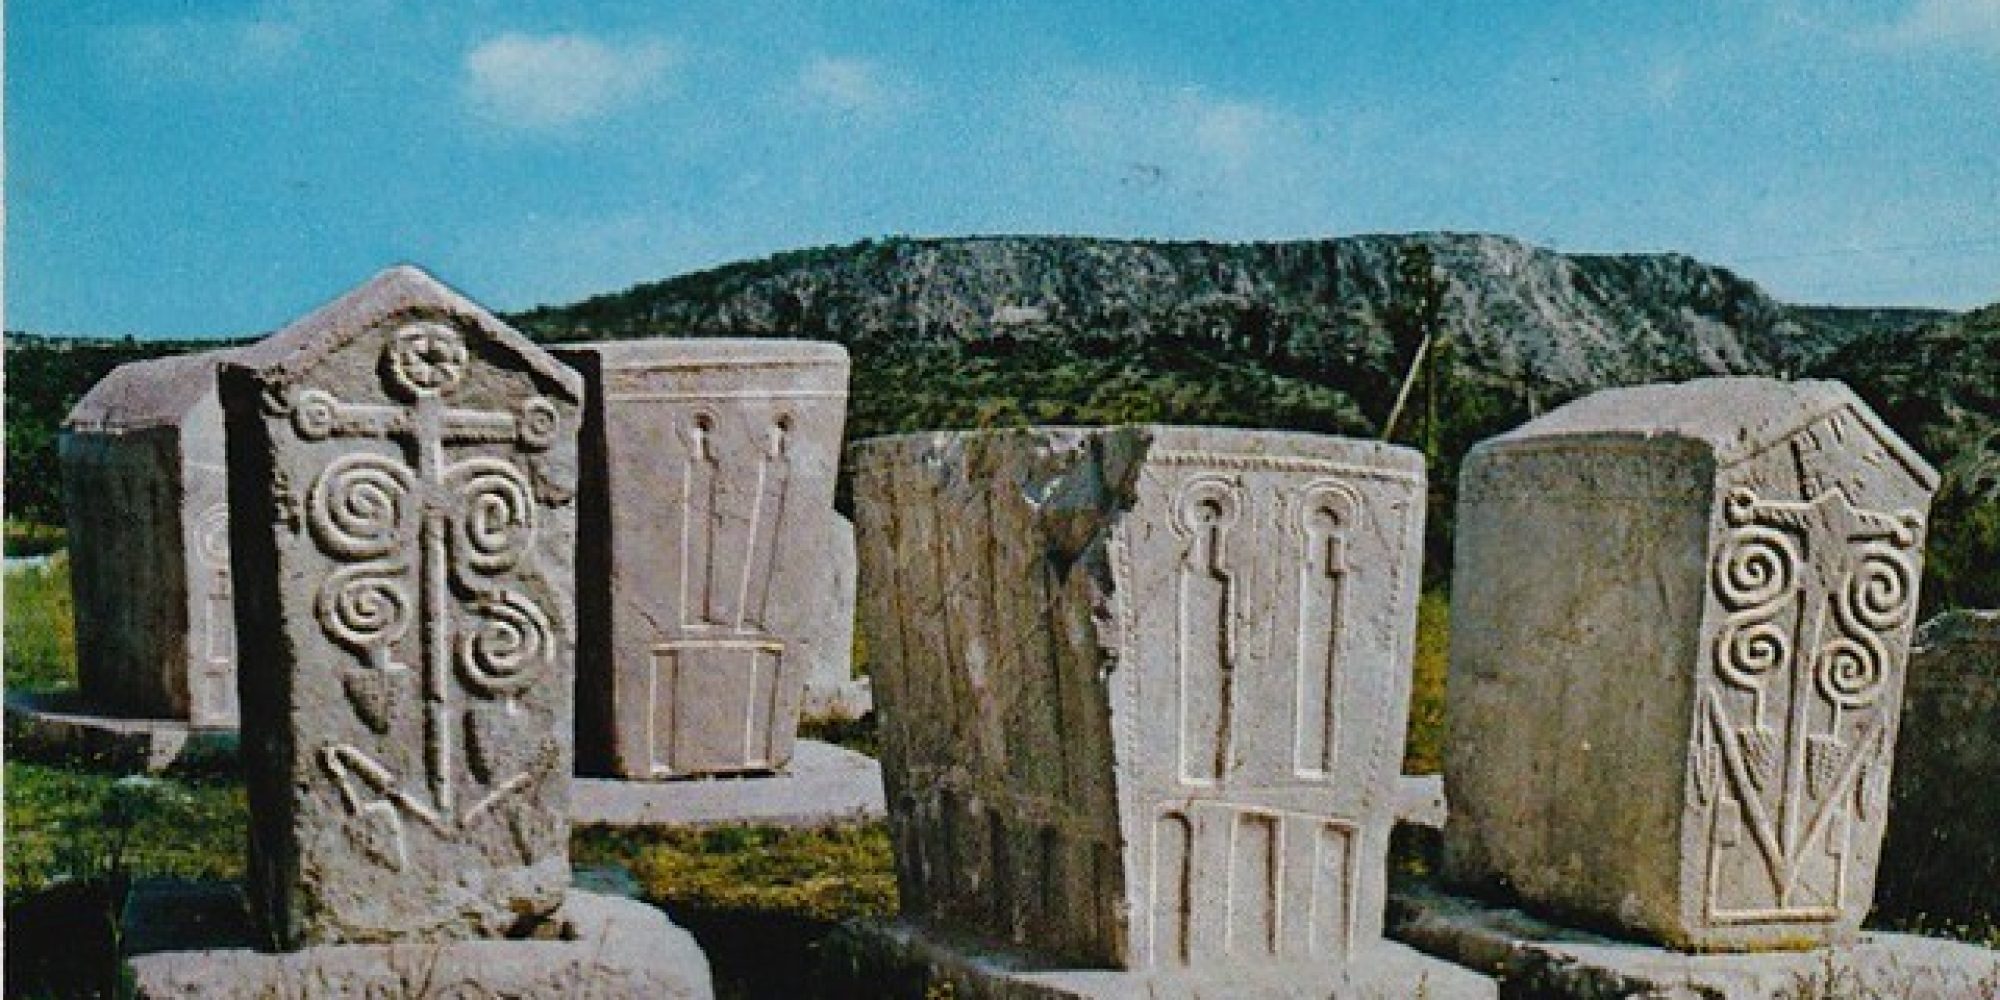 Croatia's UNESCO World Heritage sites Stećci Medieval Tombstones Graveyards